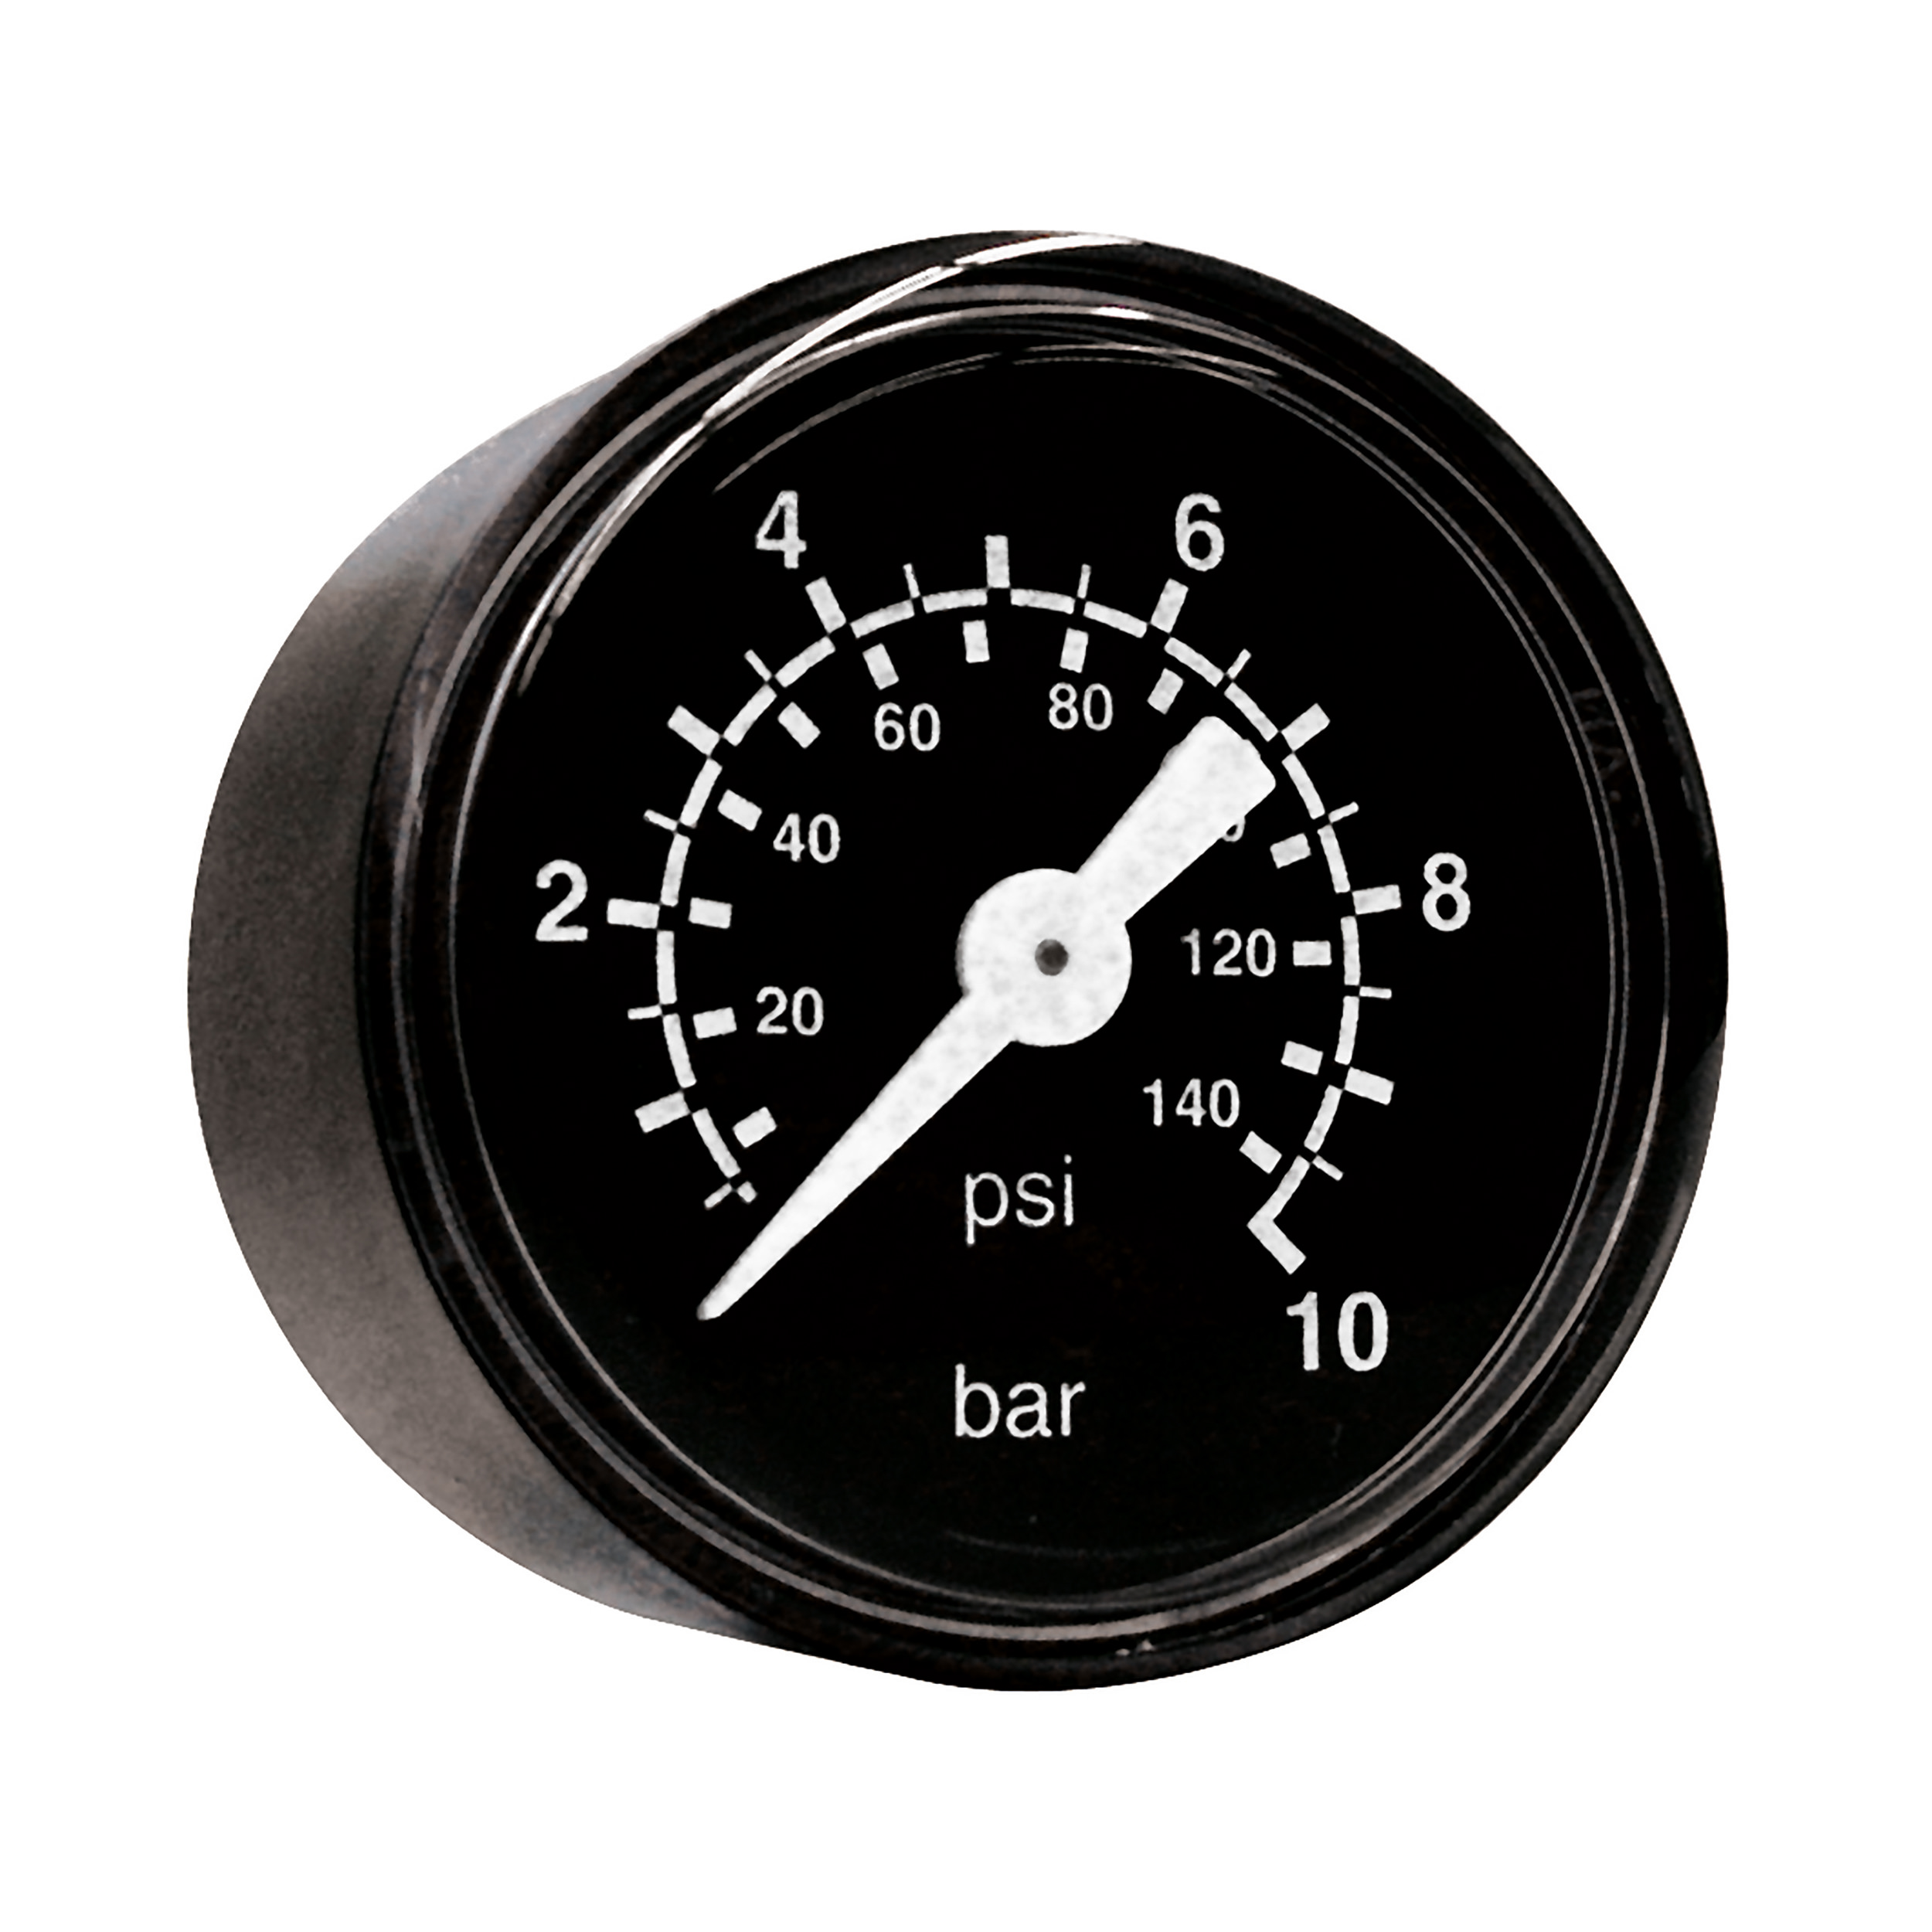 Rohrfeder-Manometer Ø40, Klasse 2,5, Grund/Aufdruck: schwarz/weiß, Anschluss waagrecht: G¼, Anzeigebereich: 0–10 bar